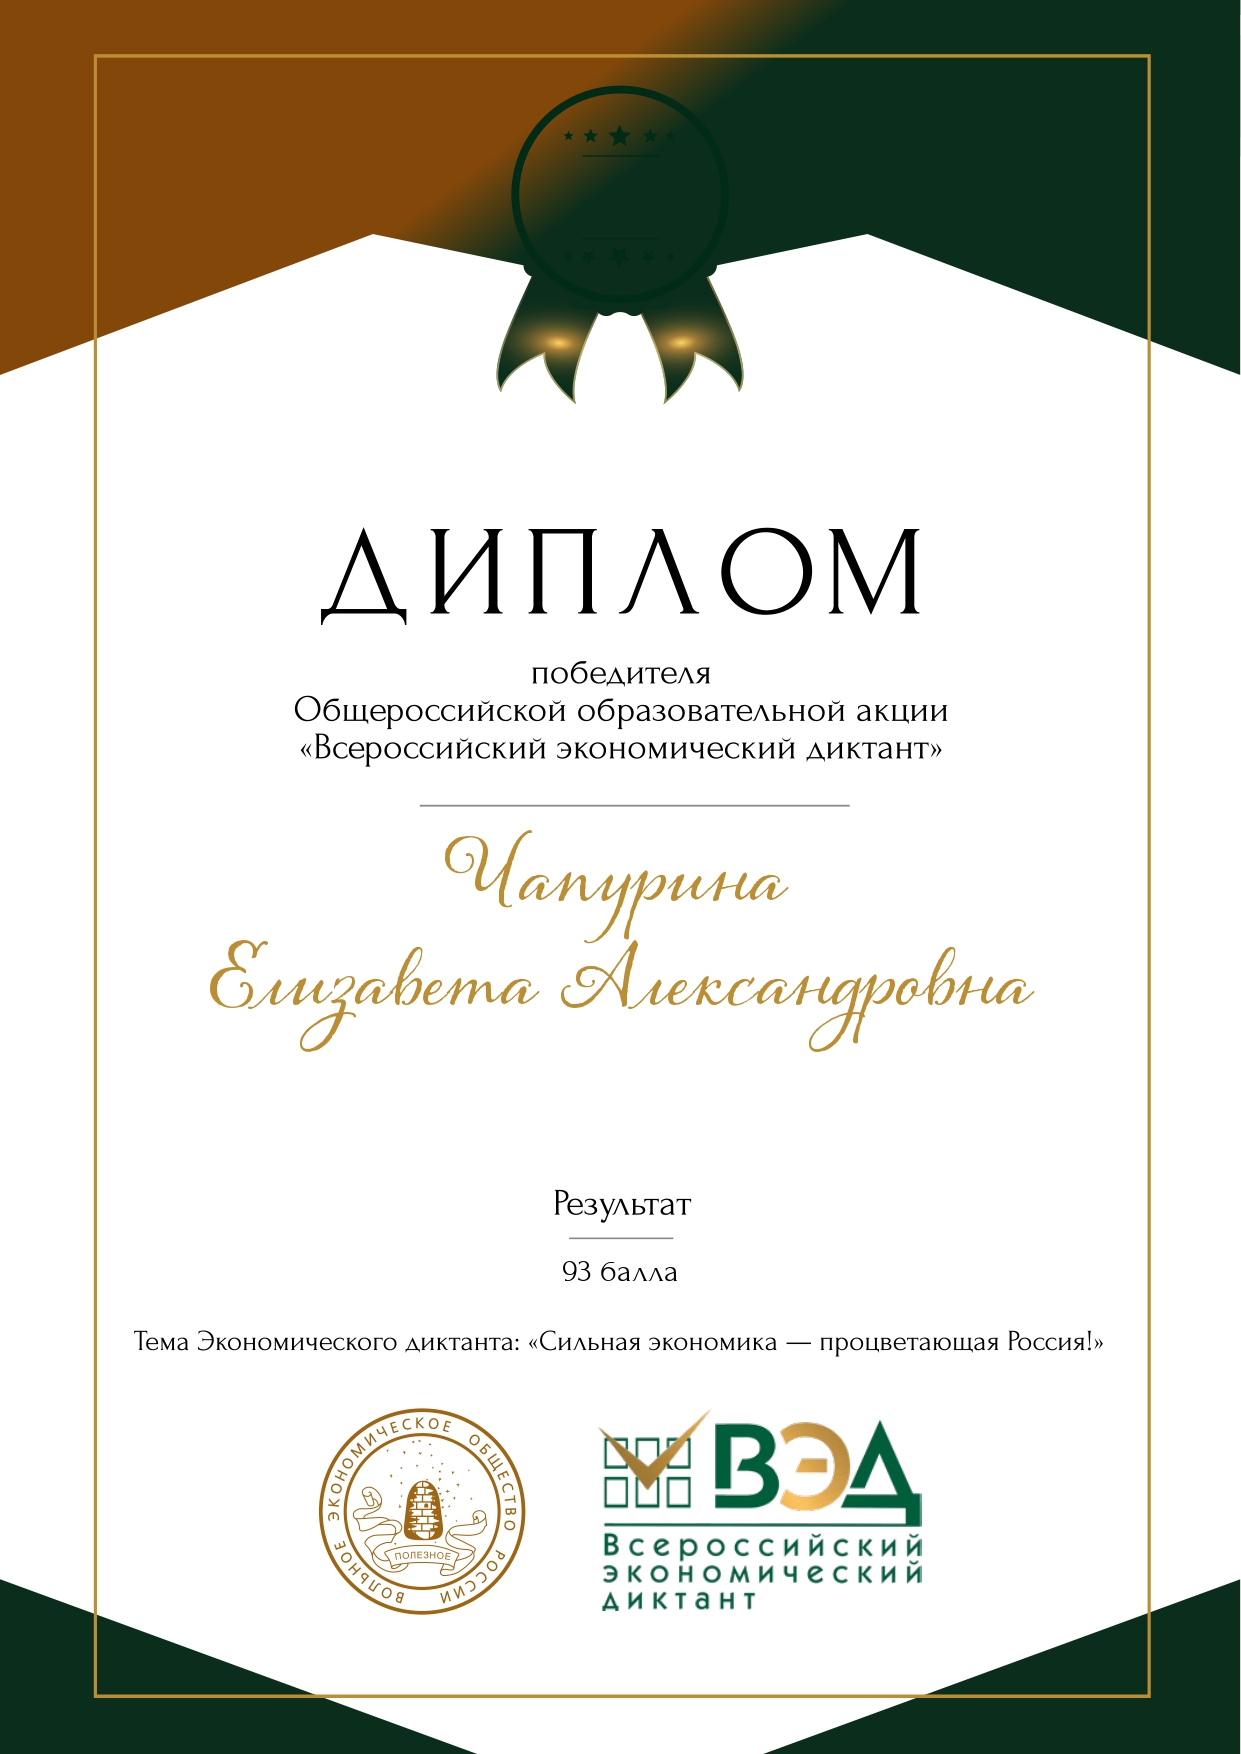 Сертификат Чапурина_page-0001.jpg